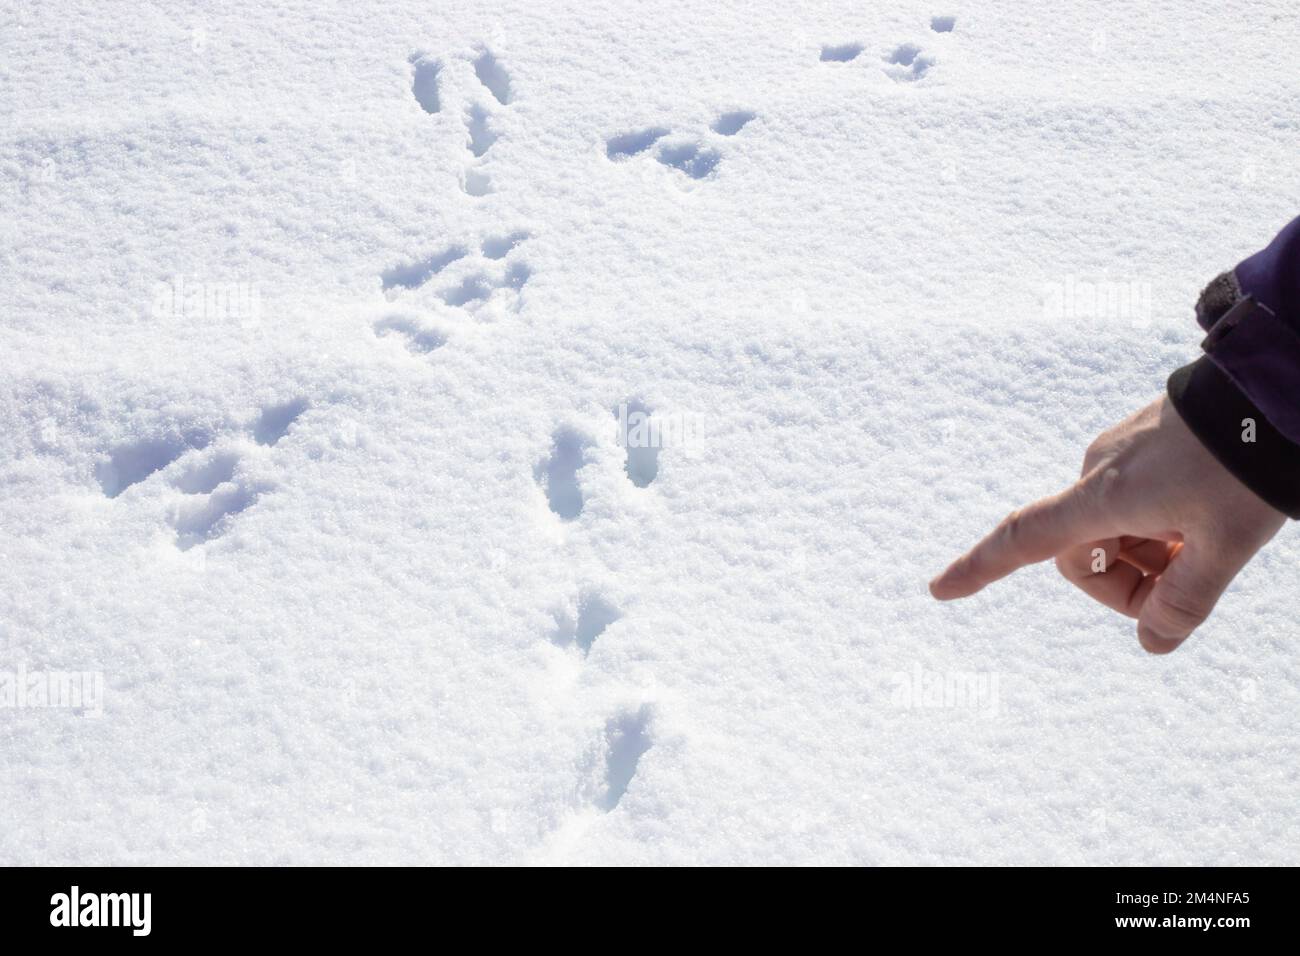 Impronte di lepre nella neve bianca e soffice, evidenziate da una mano dell'uomo. Foto Stock